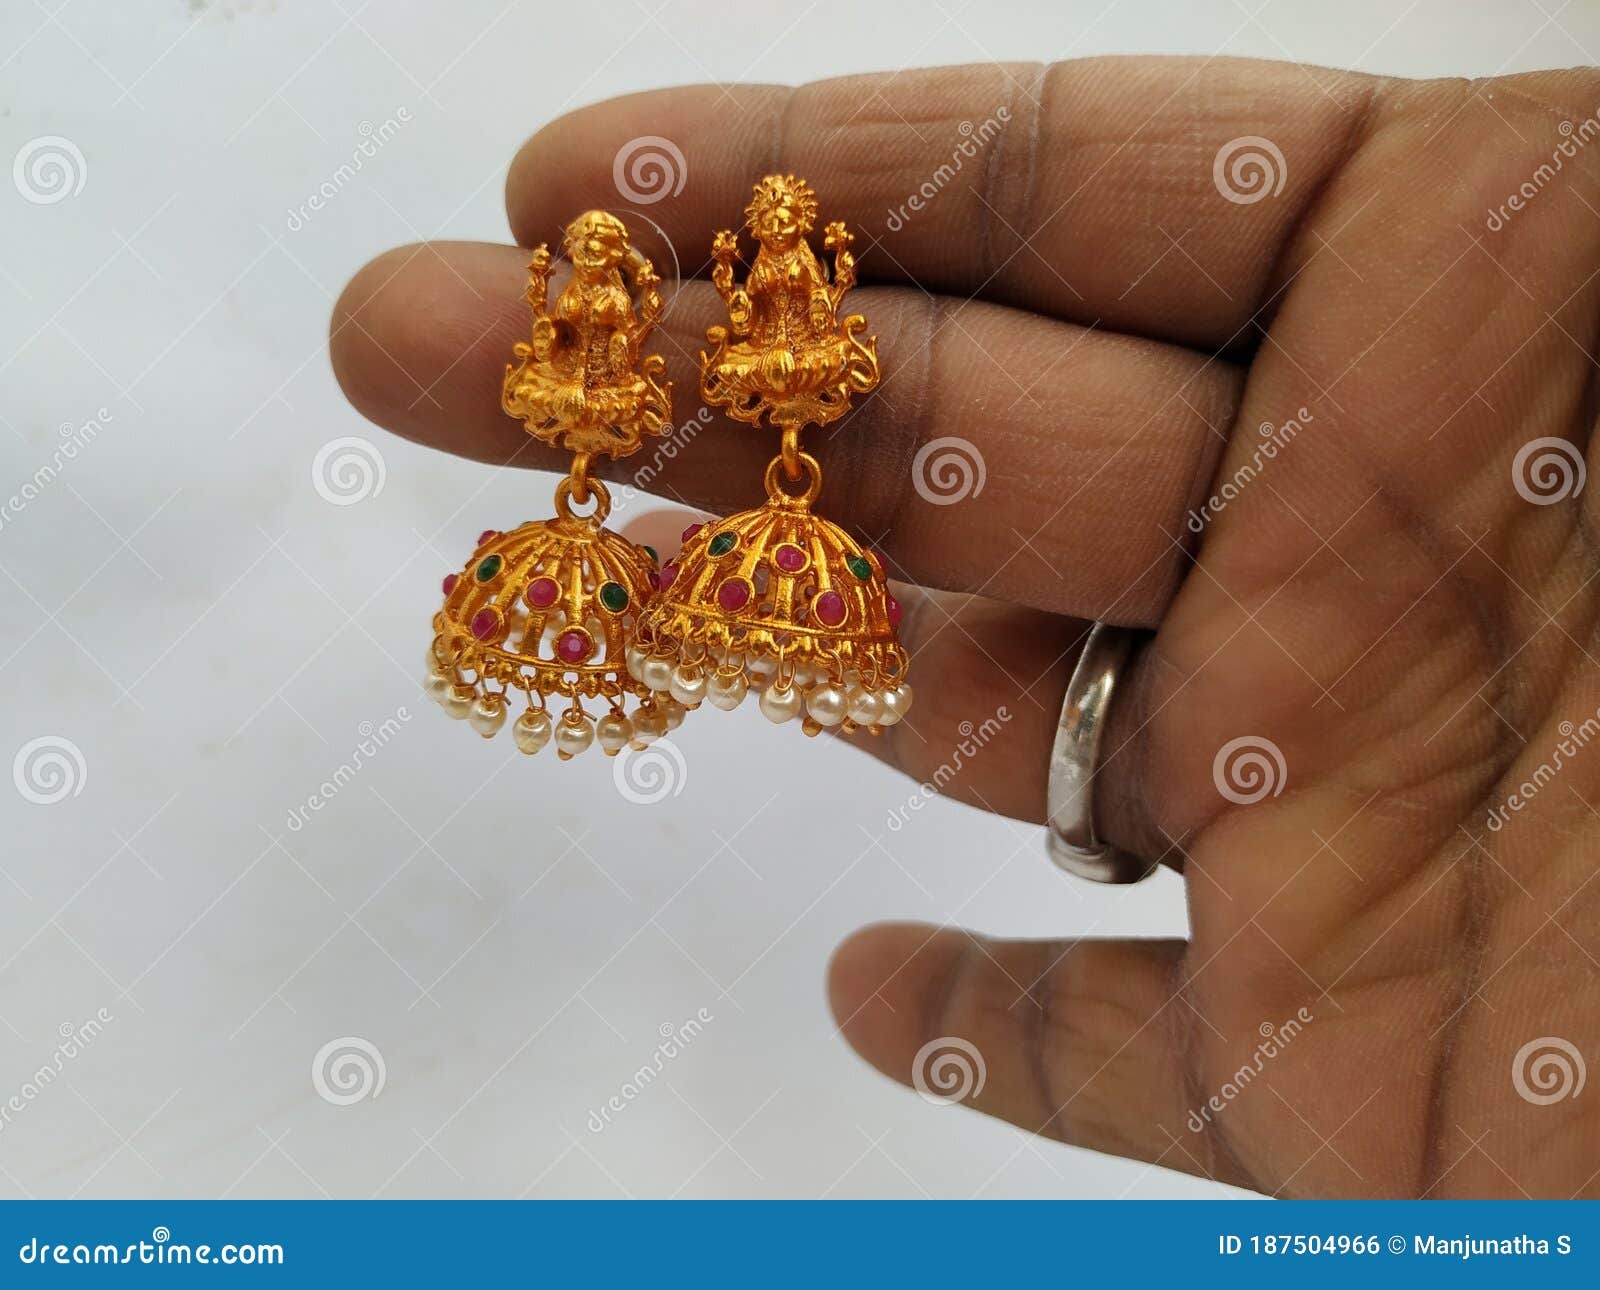 gold lakshmi ring | goddess lakshmi gold rings | lakshmi devi gold rings  online | latest lakshmi devi ring models | lakshmi ring